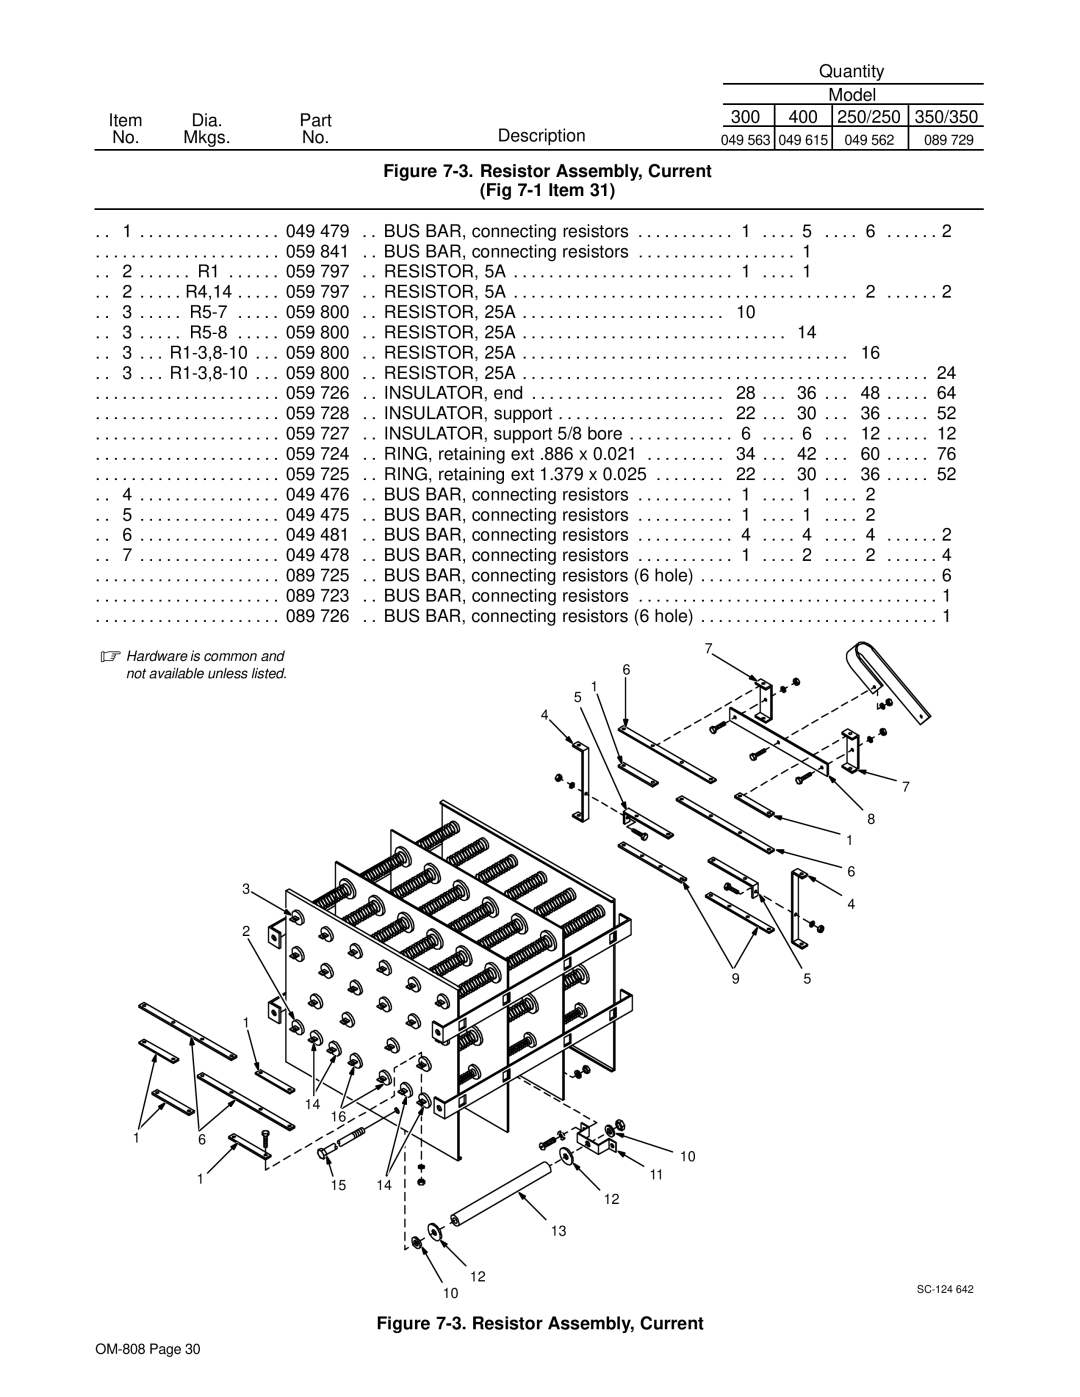 Miller Electric MOG-400, MOG-300, MOG-350, MOG-250, MOG-Pak, RGC manual Resistor Assembly, Current 